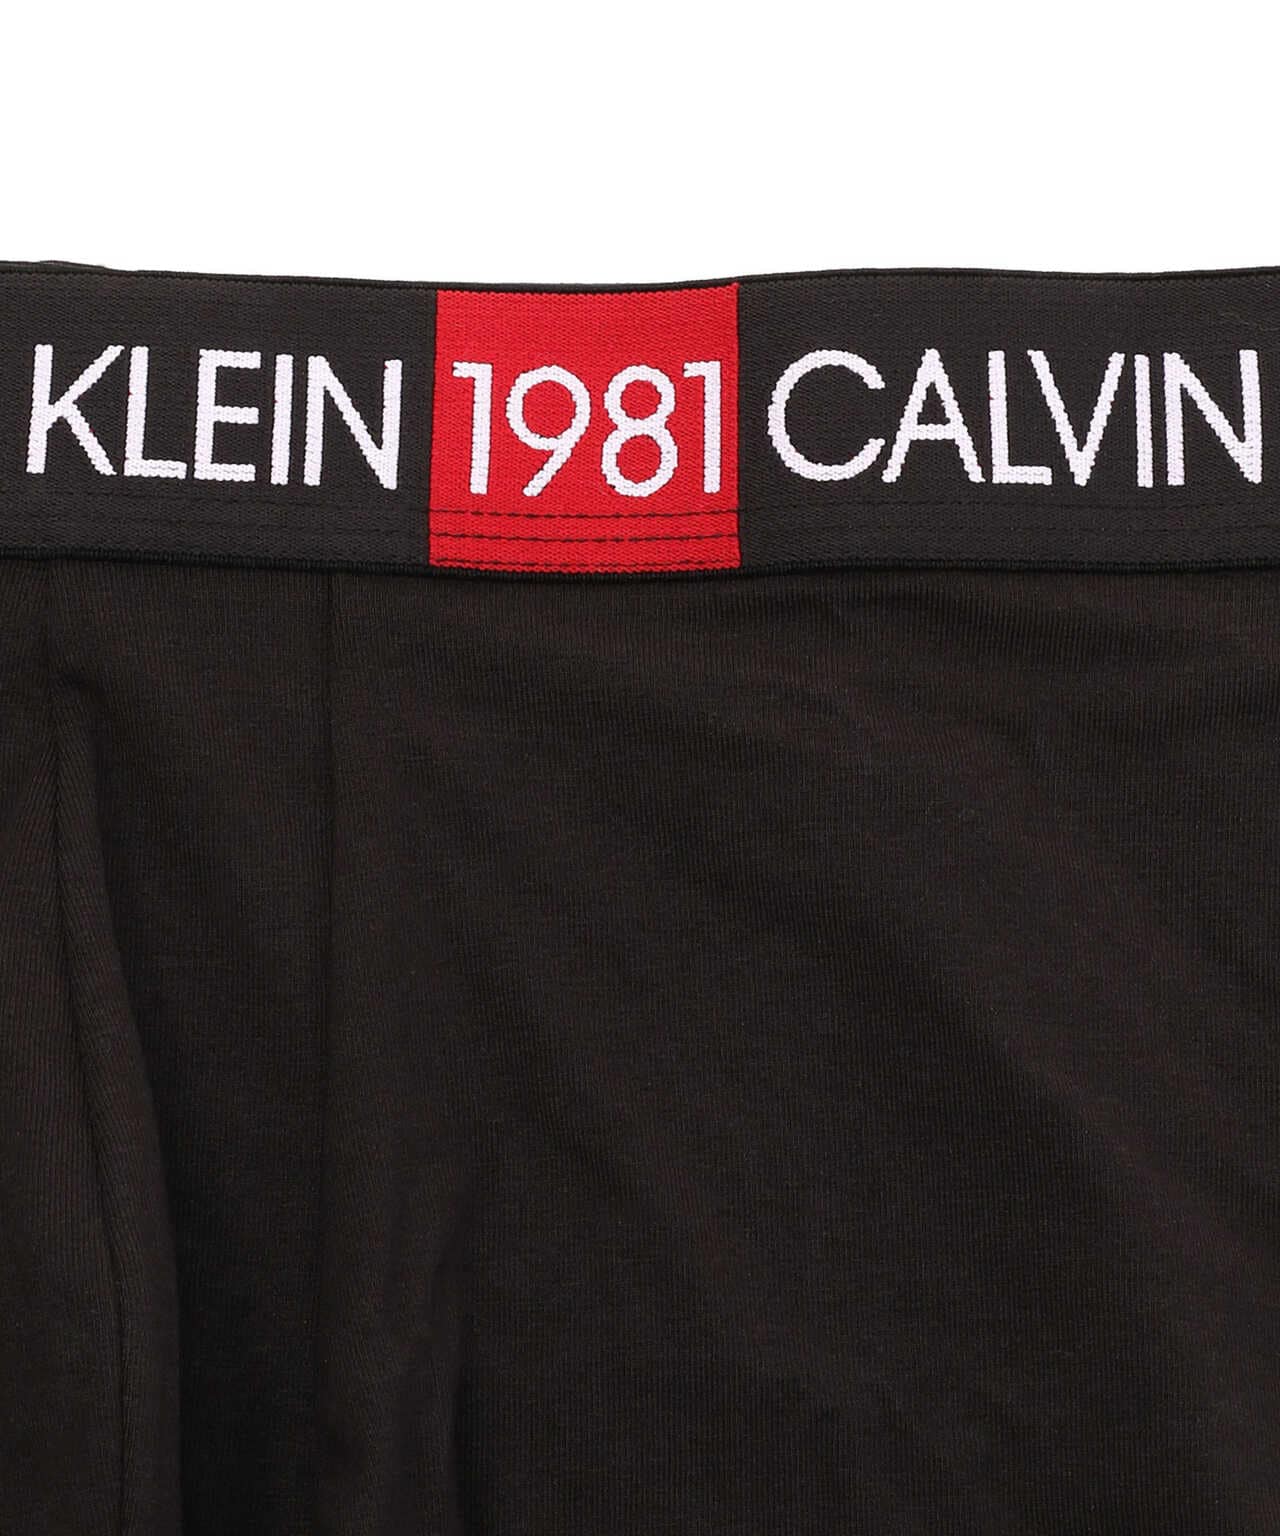 CALVIN KLEIN/カルヴァンクライン/1981 BOLD COTTON